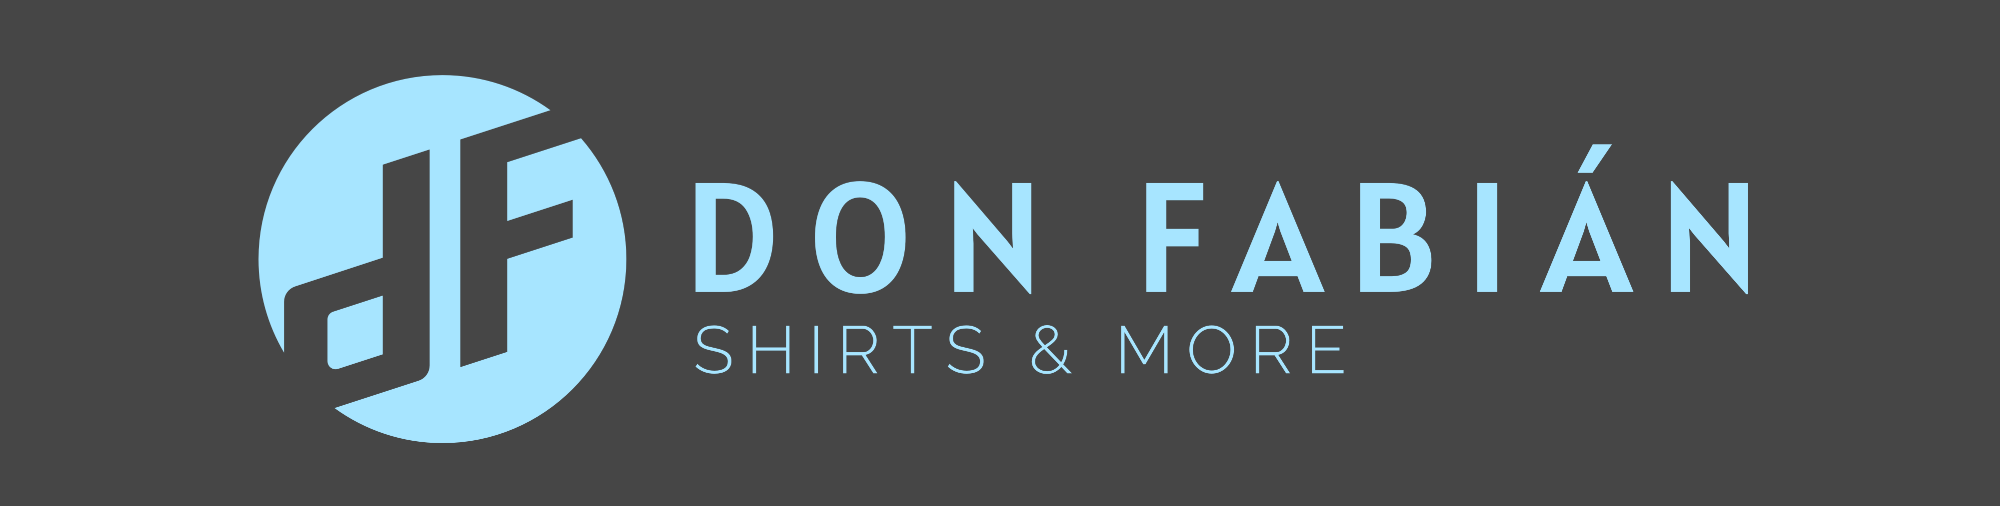 Don Fabián Shirts